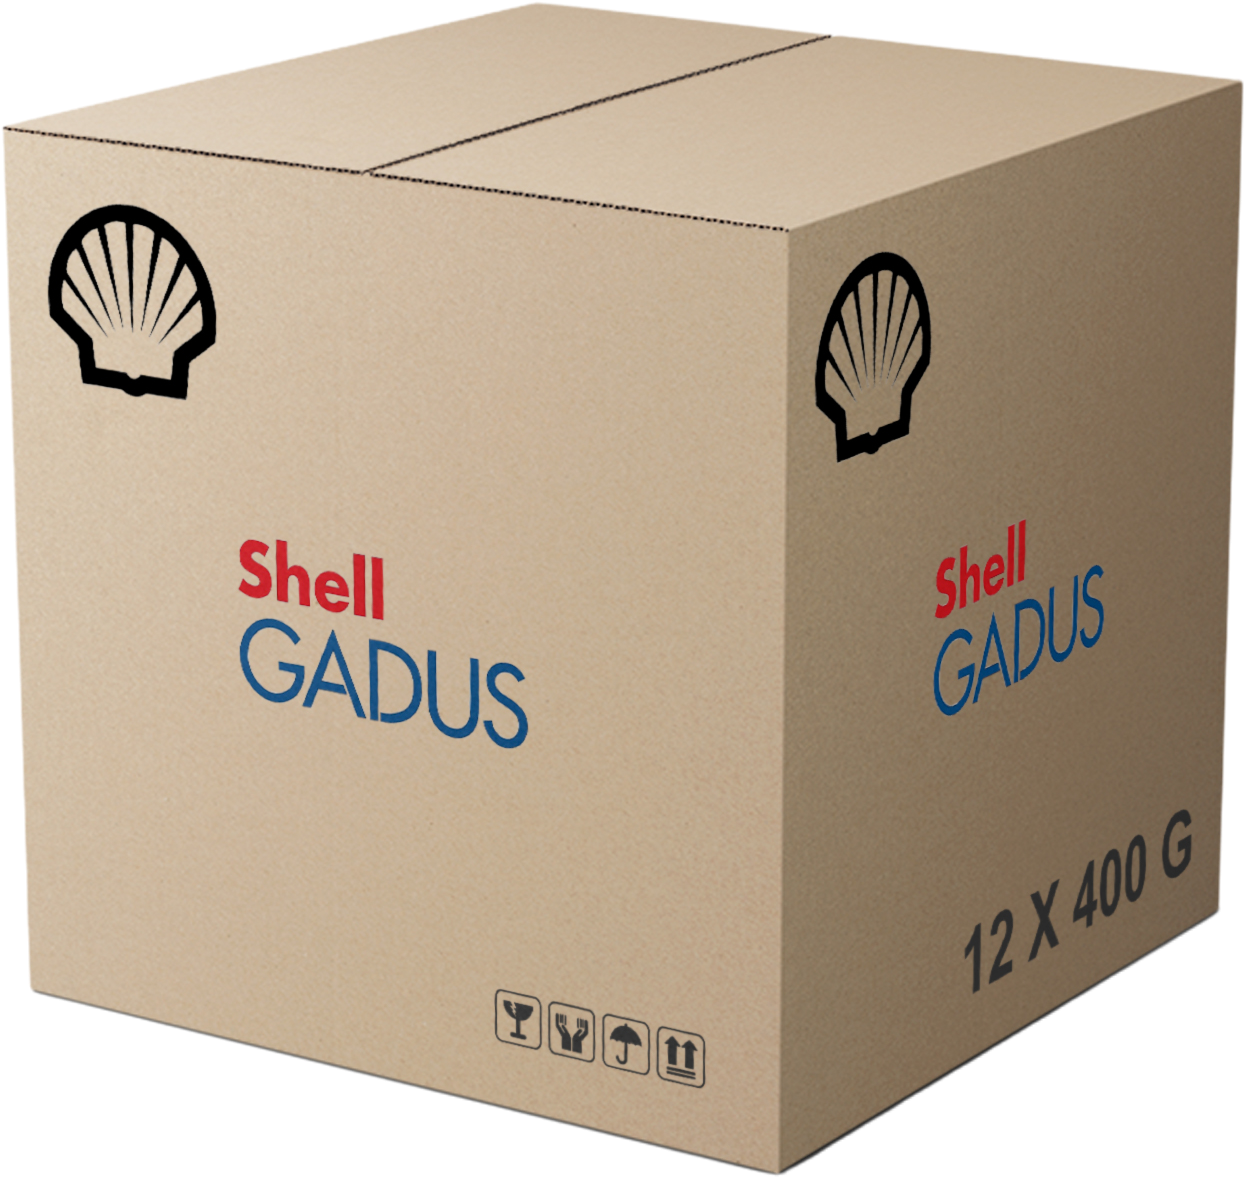 Shell Gadus S5 T460 1.5, 12 x 400 gr